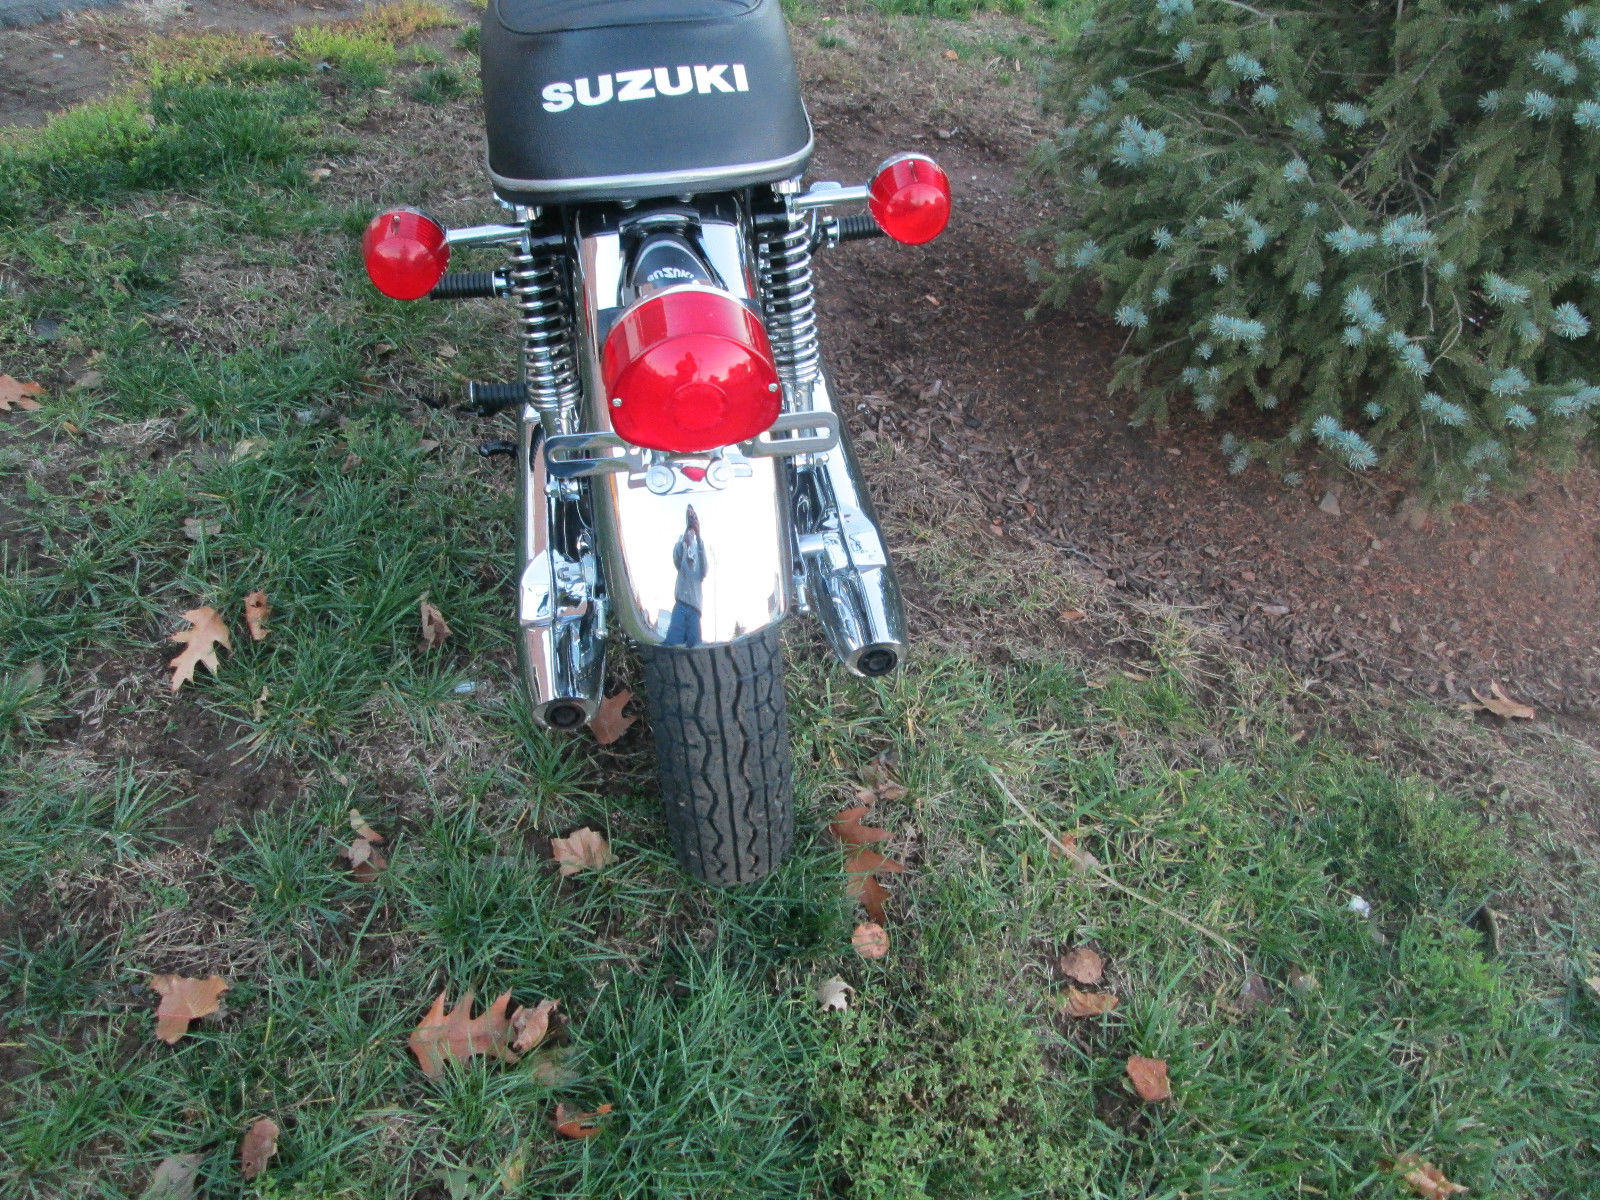 Suzuki T500 Titan - 1970